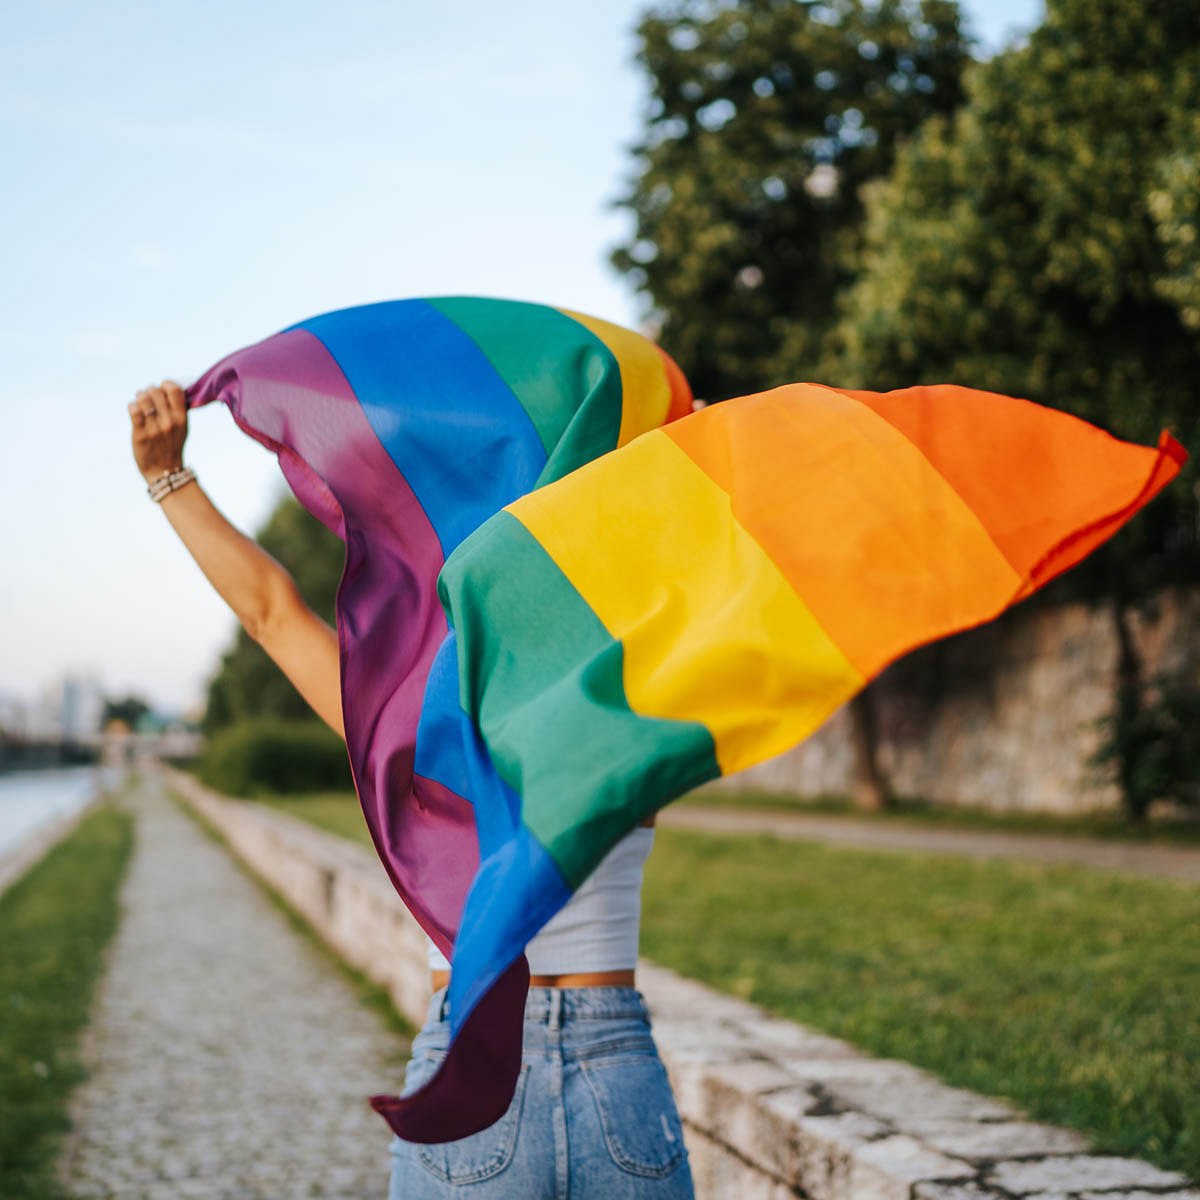 LGBTQ+-Flag: Was bedeutet sie?